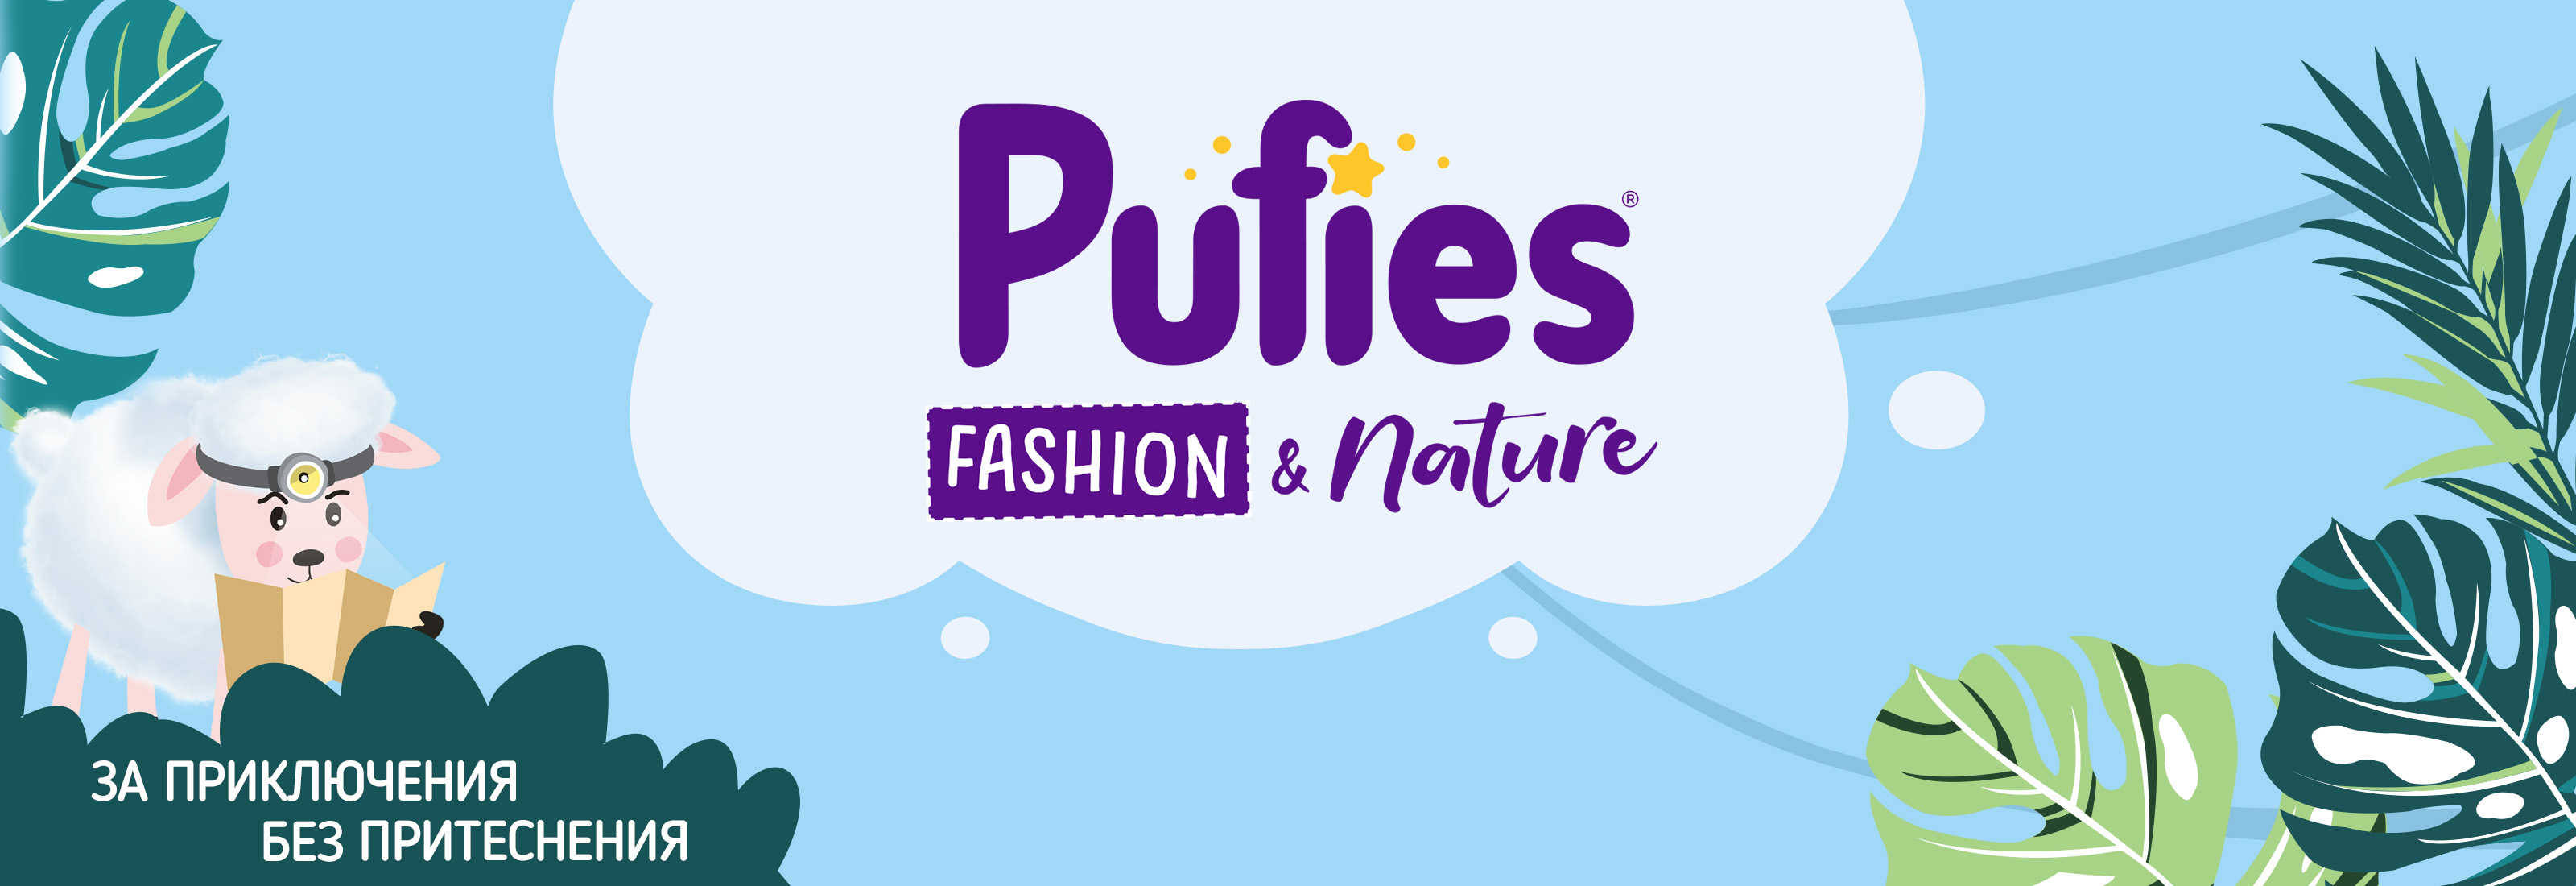 Бебешки пелени Pufies Fashion & Nature 5, 138 броя